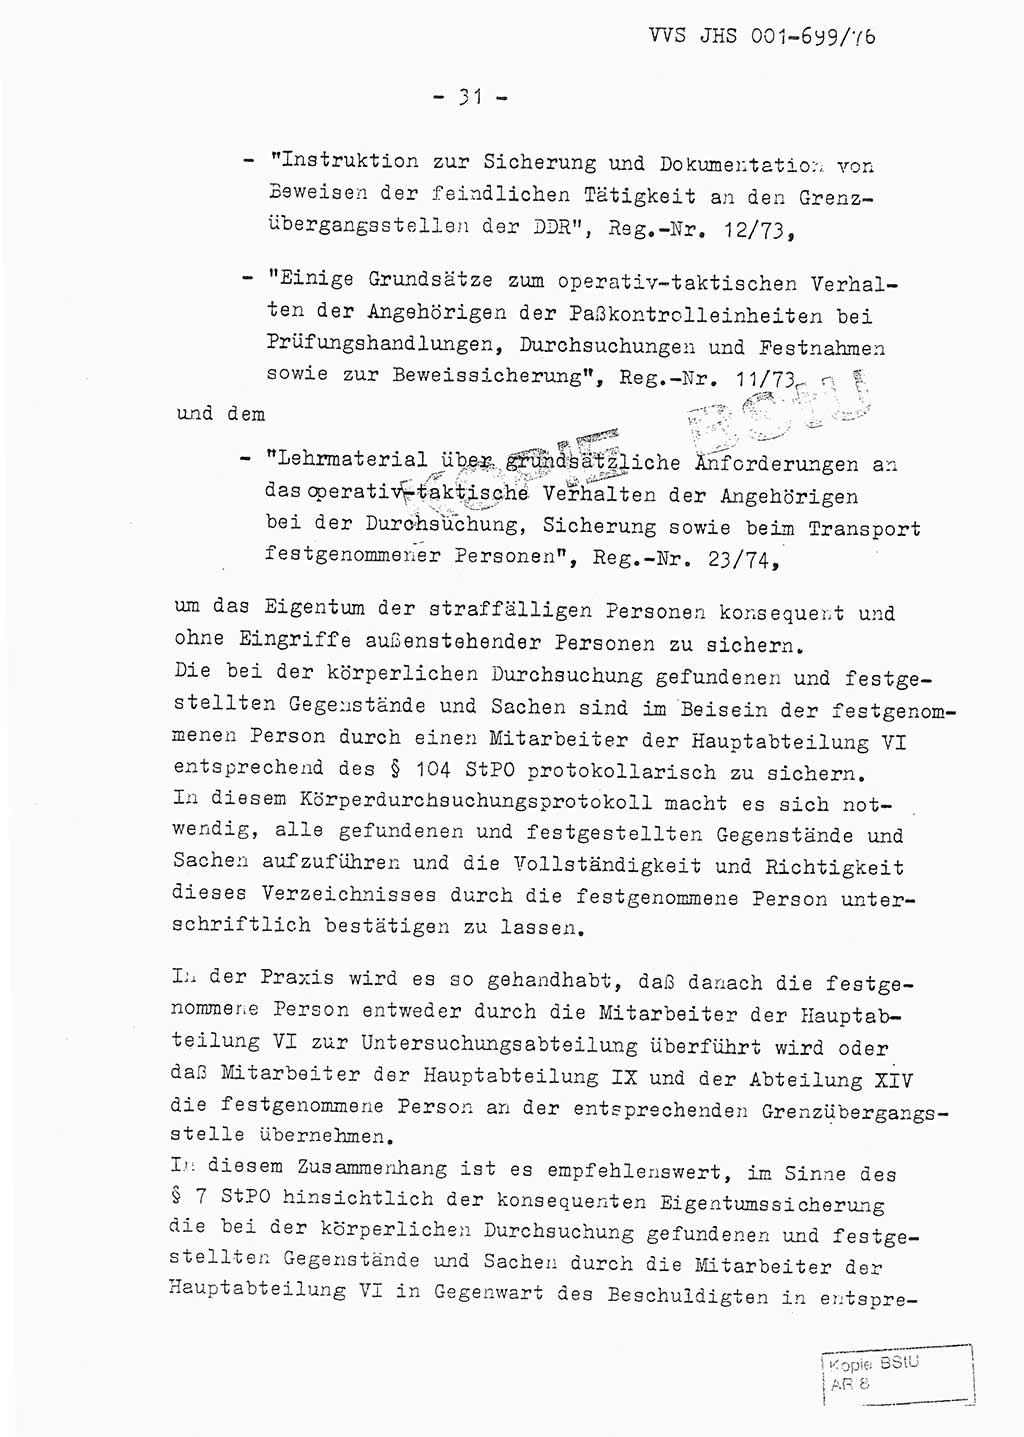 Fachschulabschlußarbeit Leutnant Volkmar Taubert (HA Ⅸ/9), Leutnant Axel Naumann (HA Ⅸ/9), Unterleutnat Detlef Debski (HA Ⅸ/9), Ministerium für Staatssicherheit (MfS) [Deutsche Demokratische Republik (DDR)], Juristische Hochschule (JHS), Vertrauliche Verschlußsache (VVS) 001-699/76, Potsdam 1976, Seite 31 (FS-Abschl.-Arb. MfS DDR JHS VVS 001-699/76 1976, S. 31)